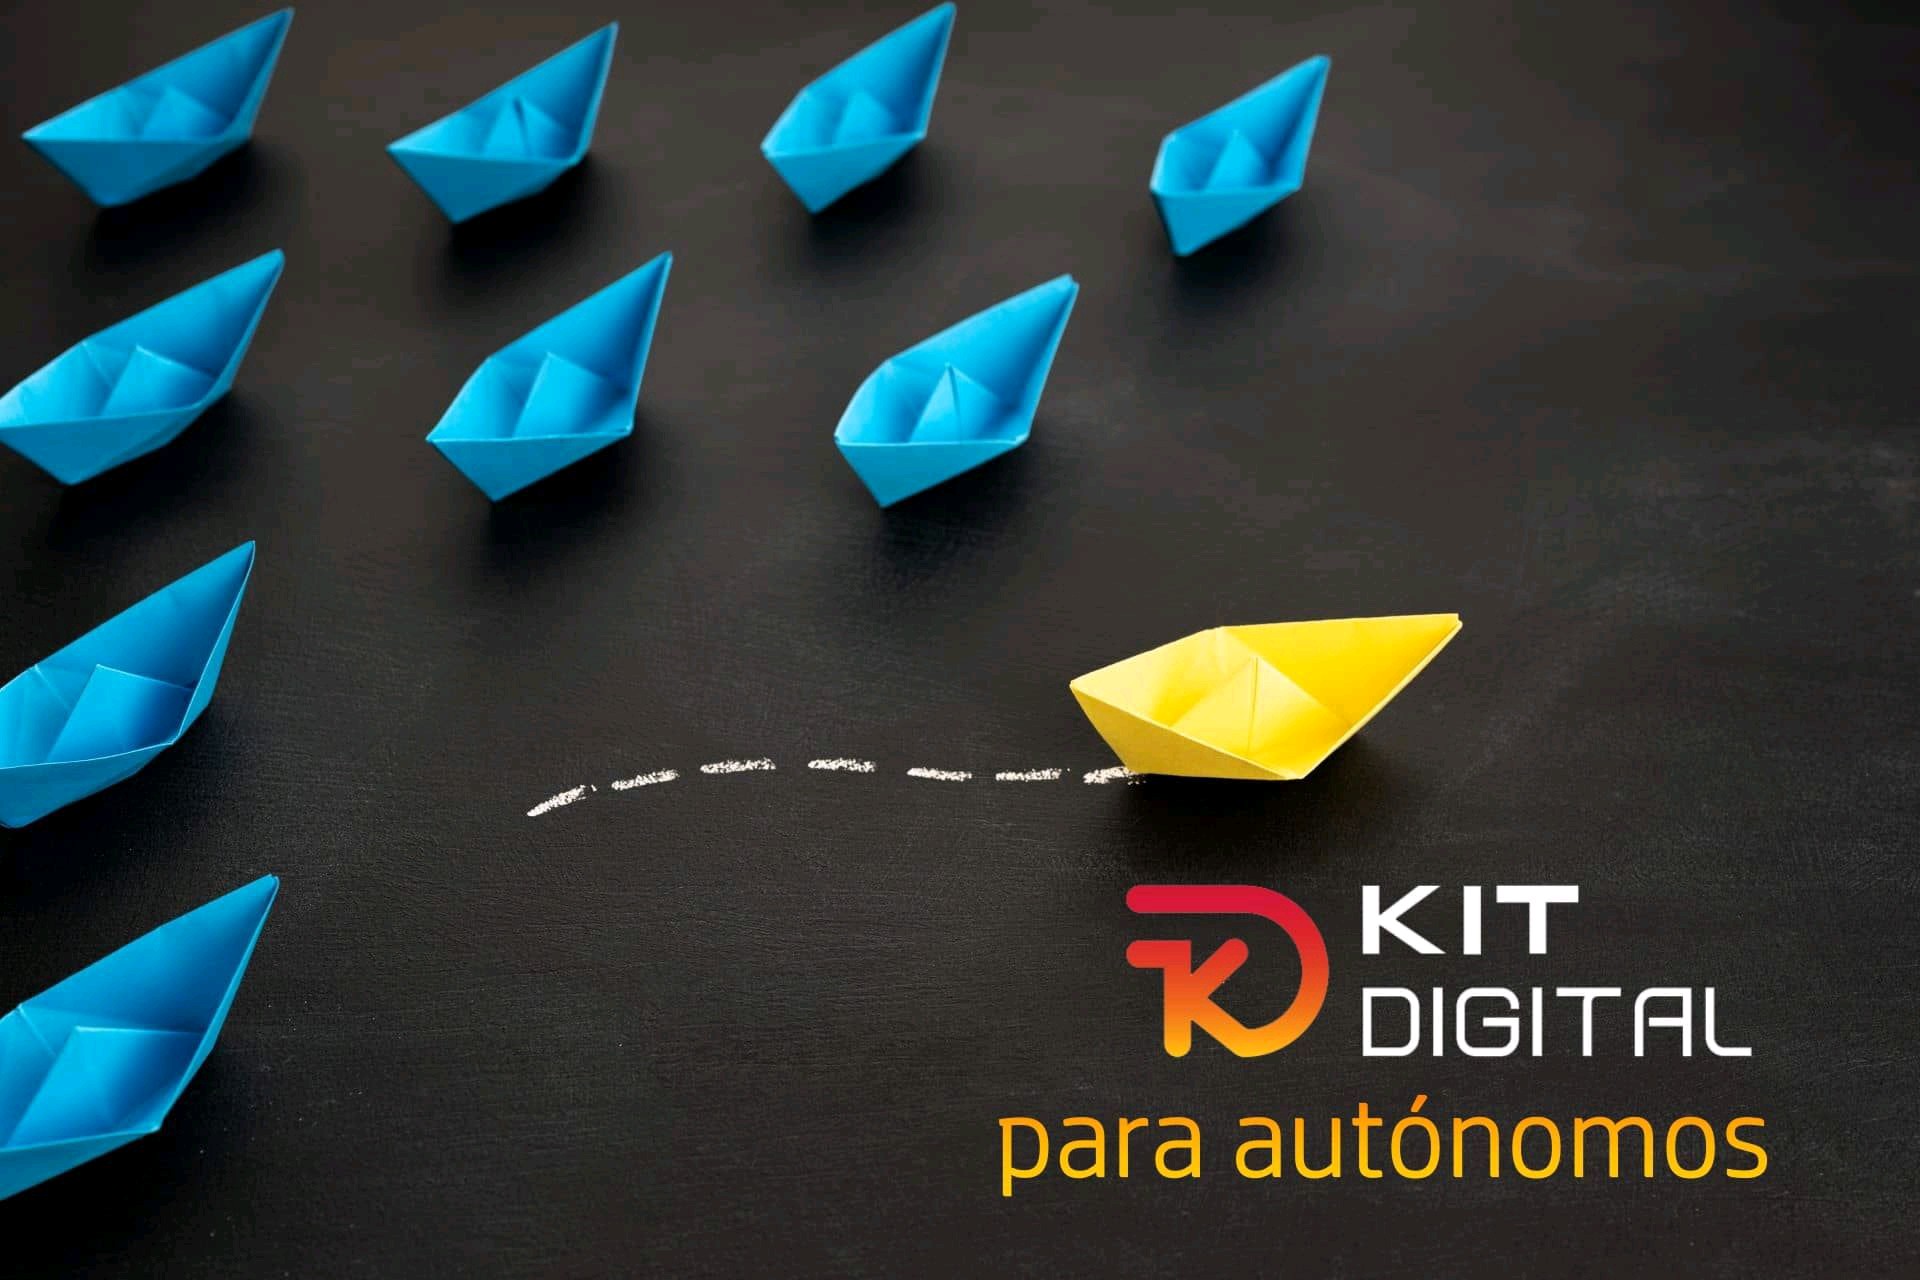 KIT Digital: Ayudas a la digitalización de empresas de 2000€ hasta 12.000€ a pymes y autónomos.